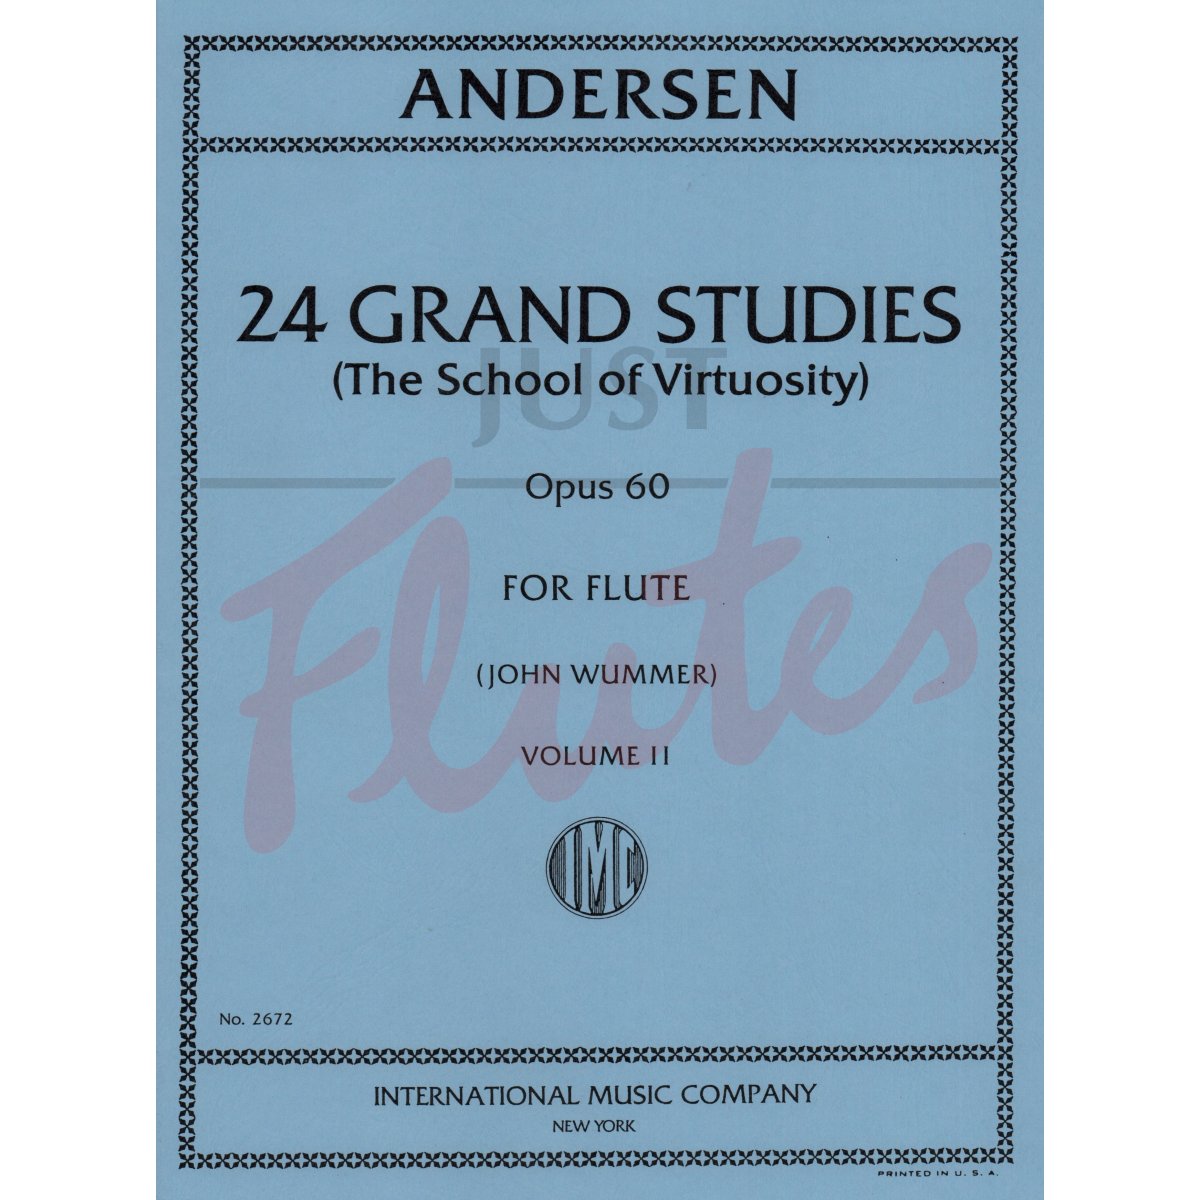 24 Grand Studies for Flute